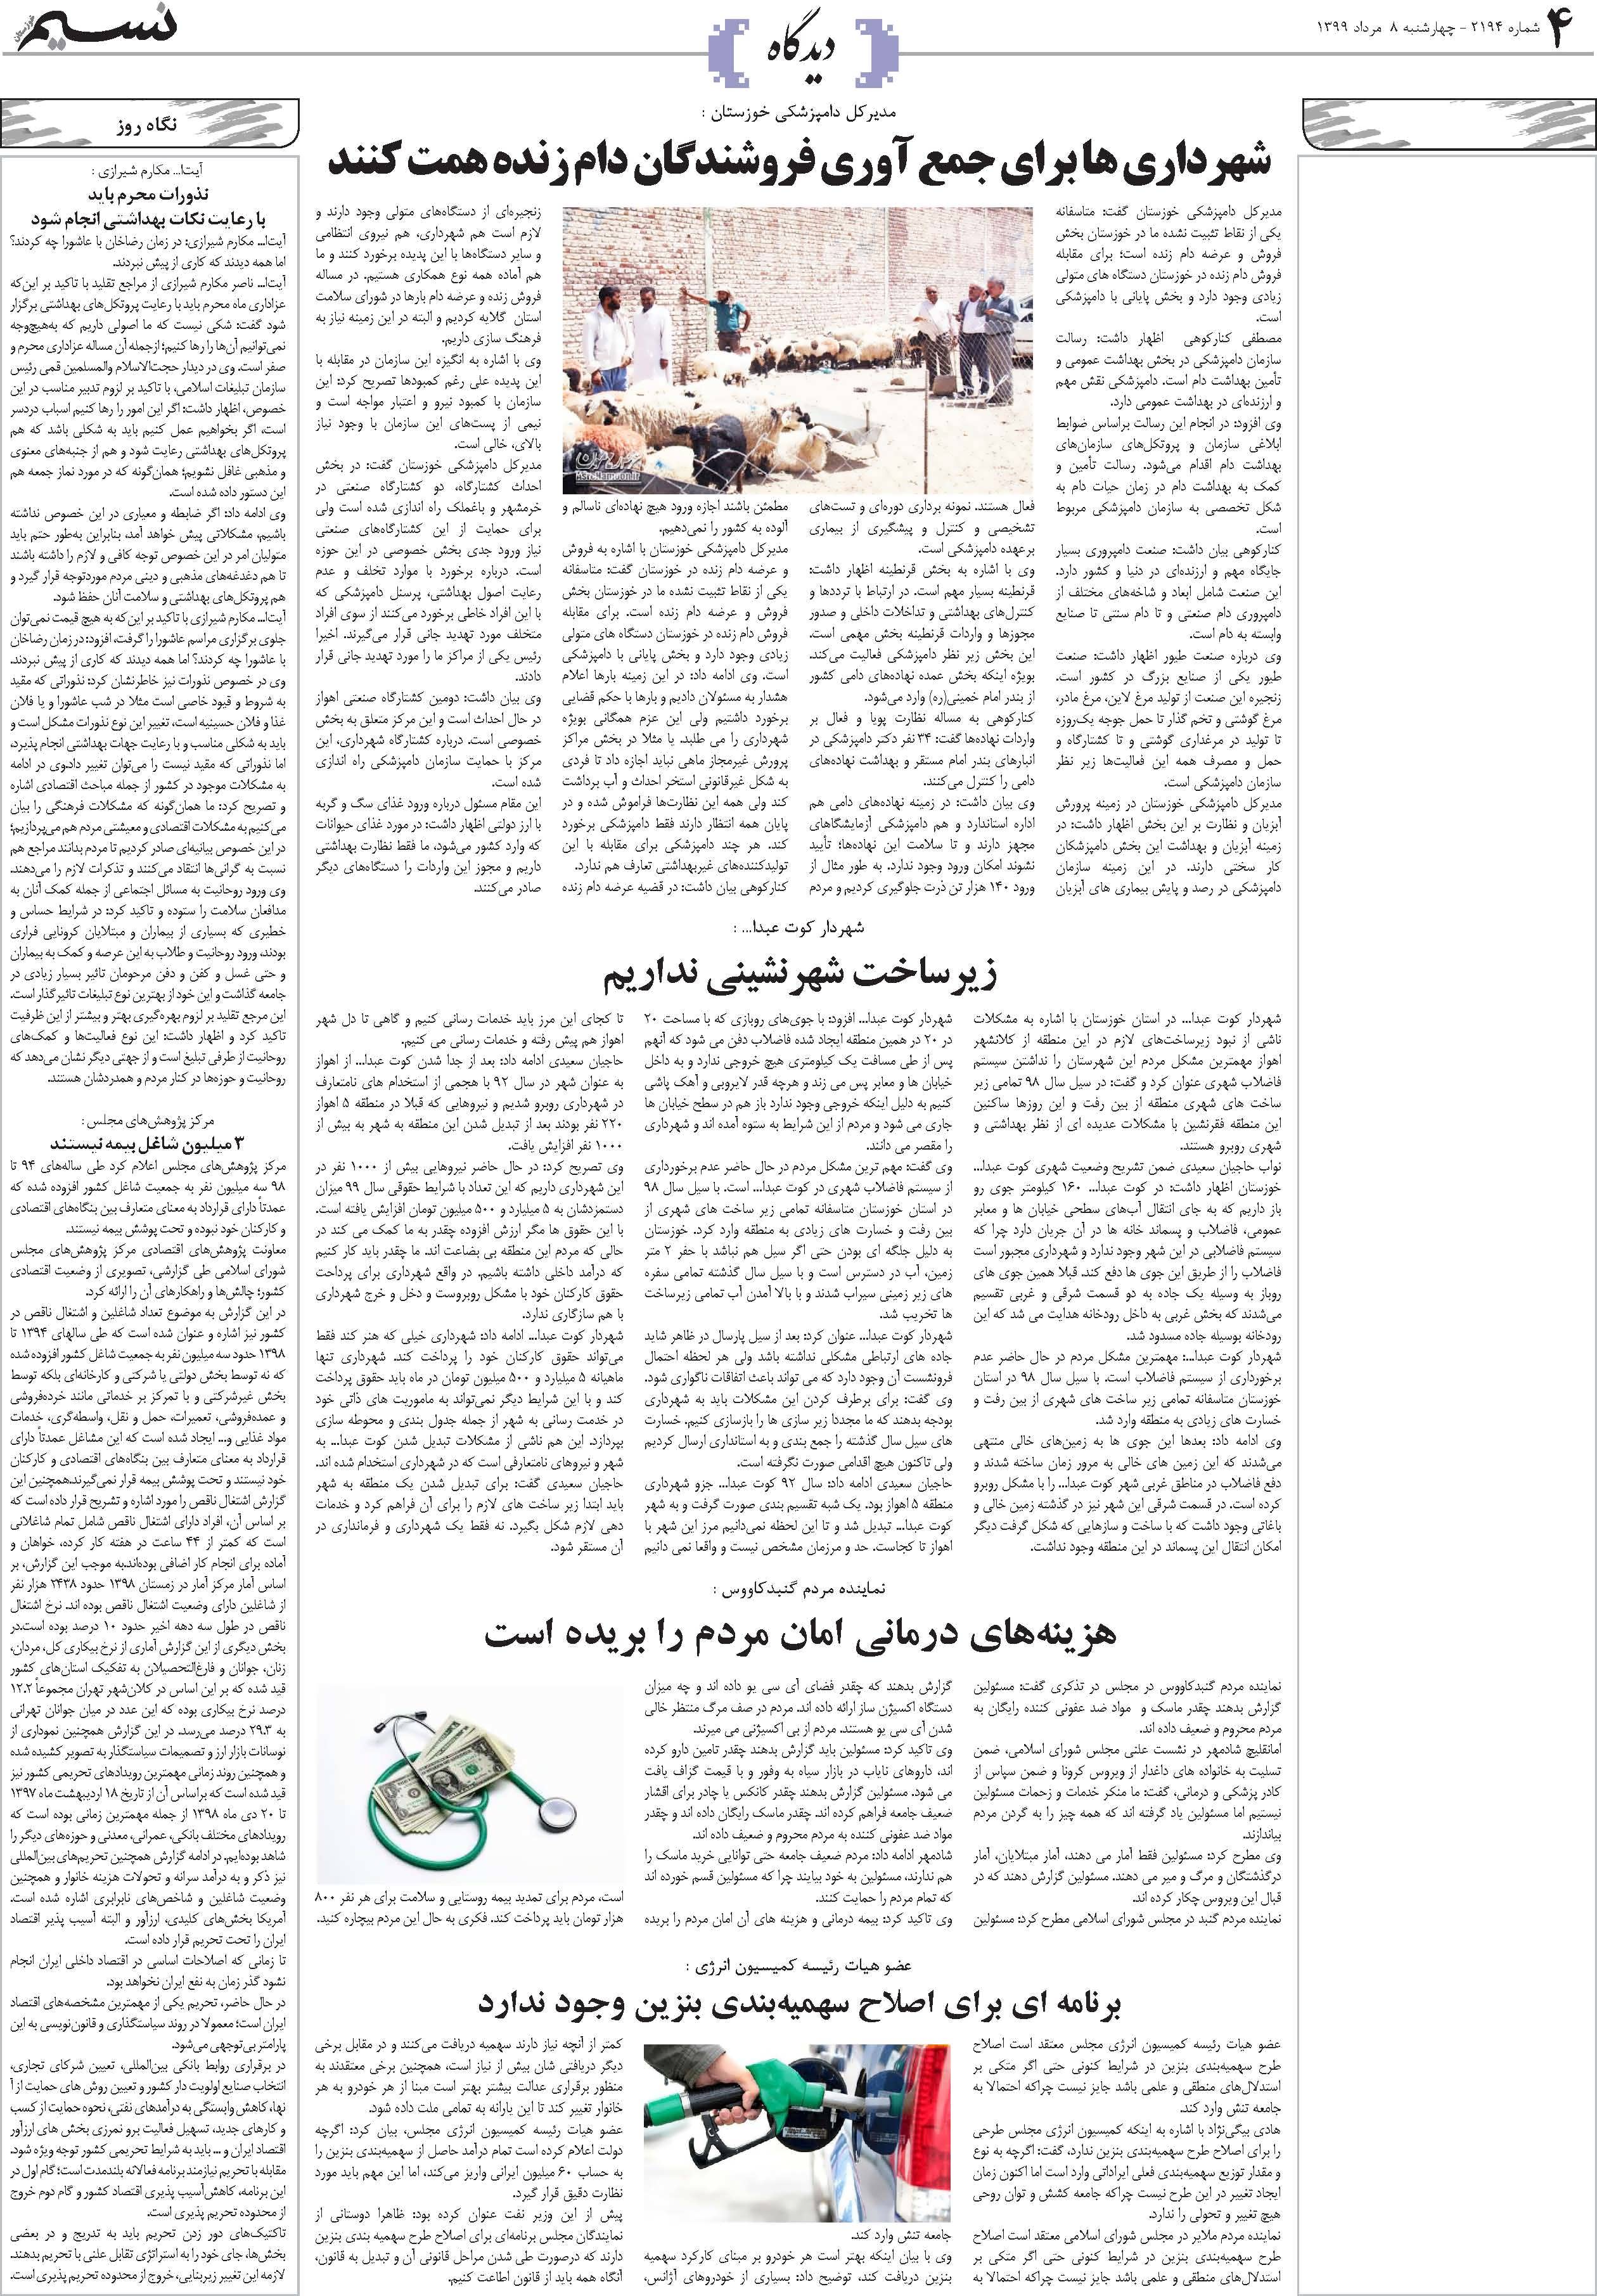 صفحه دیدگاه روزنامه نسیم شماره 2194